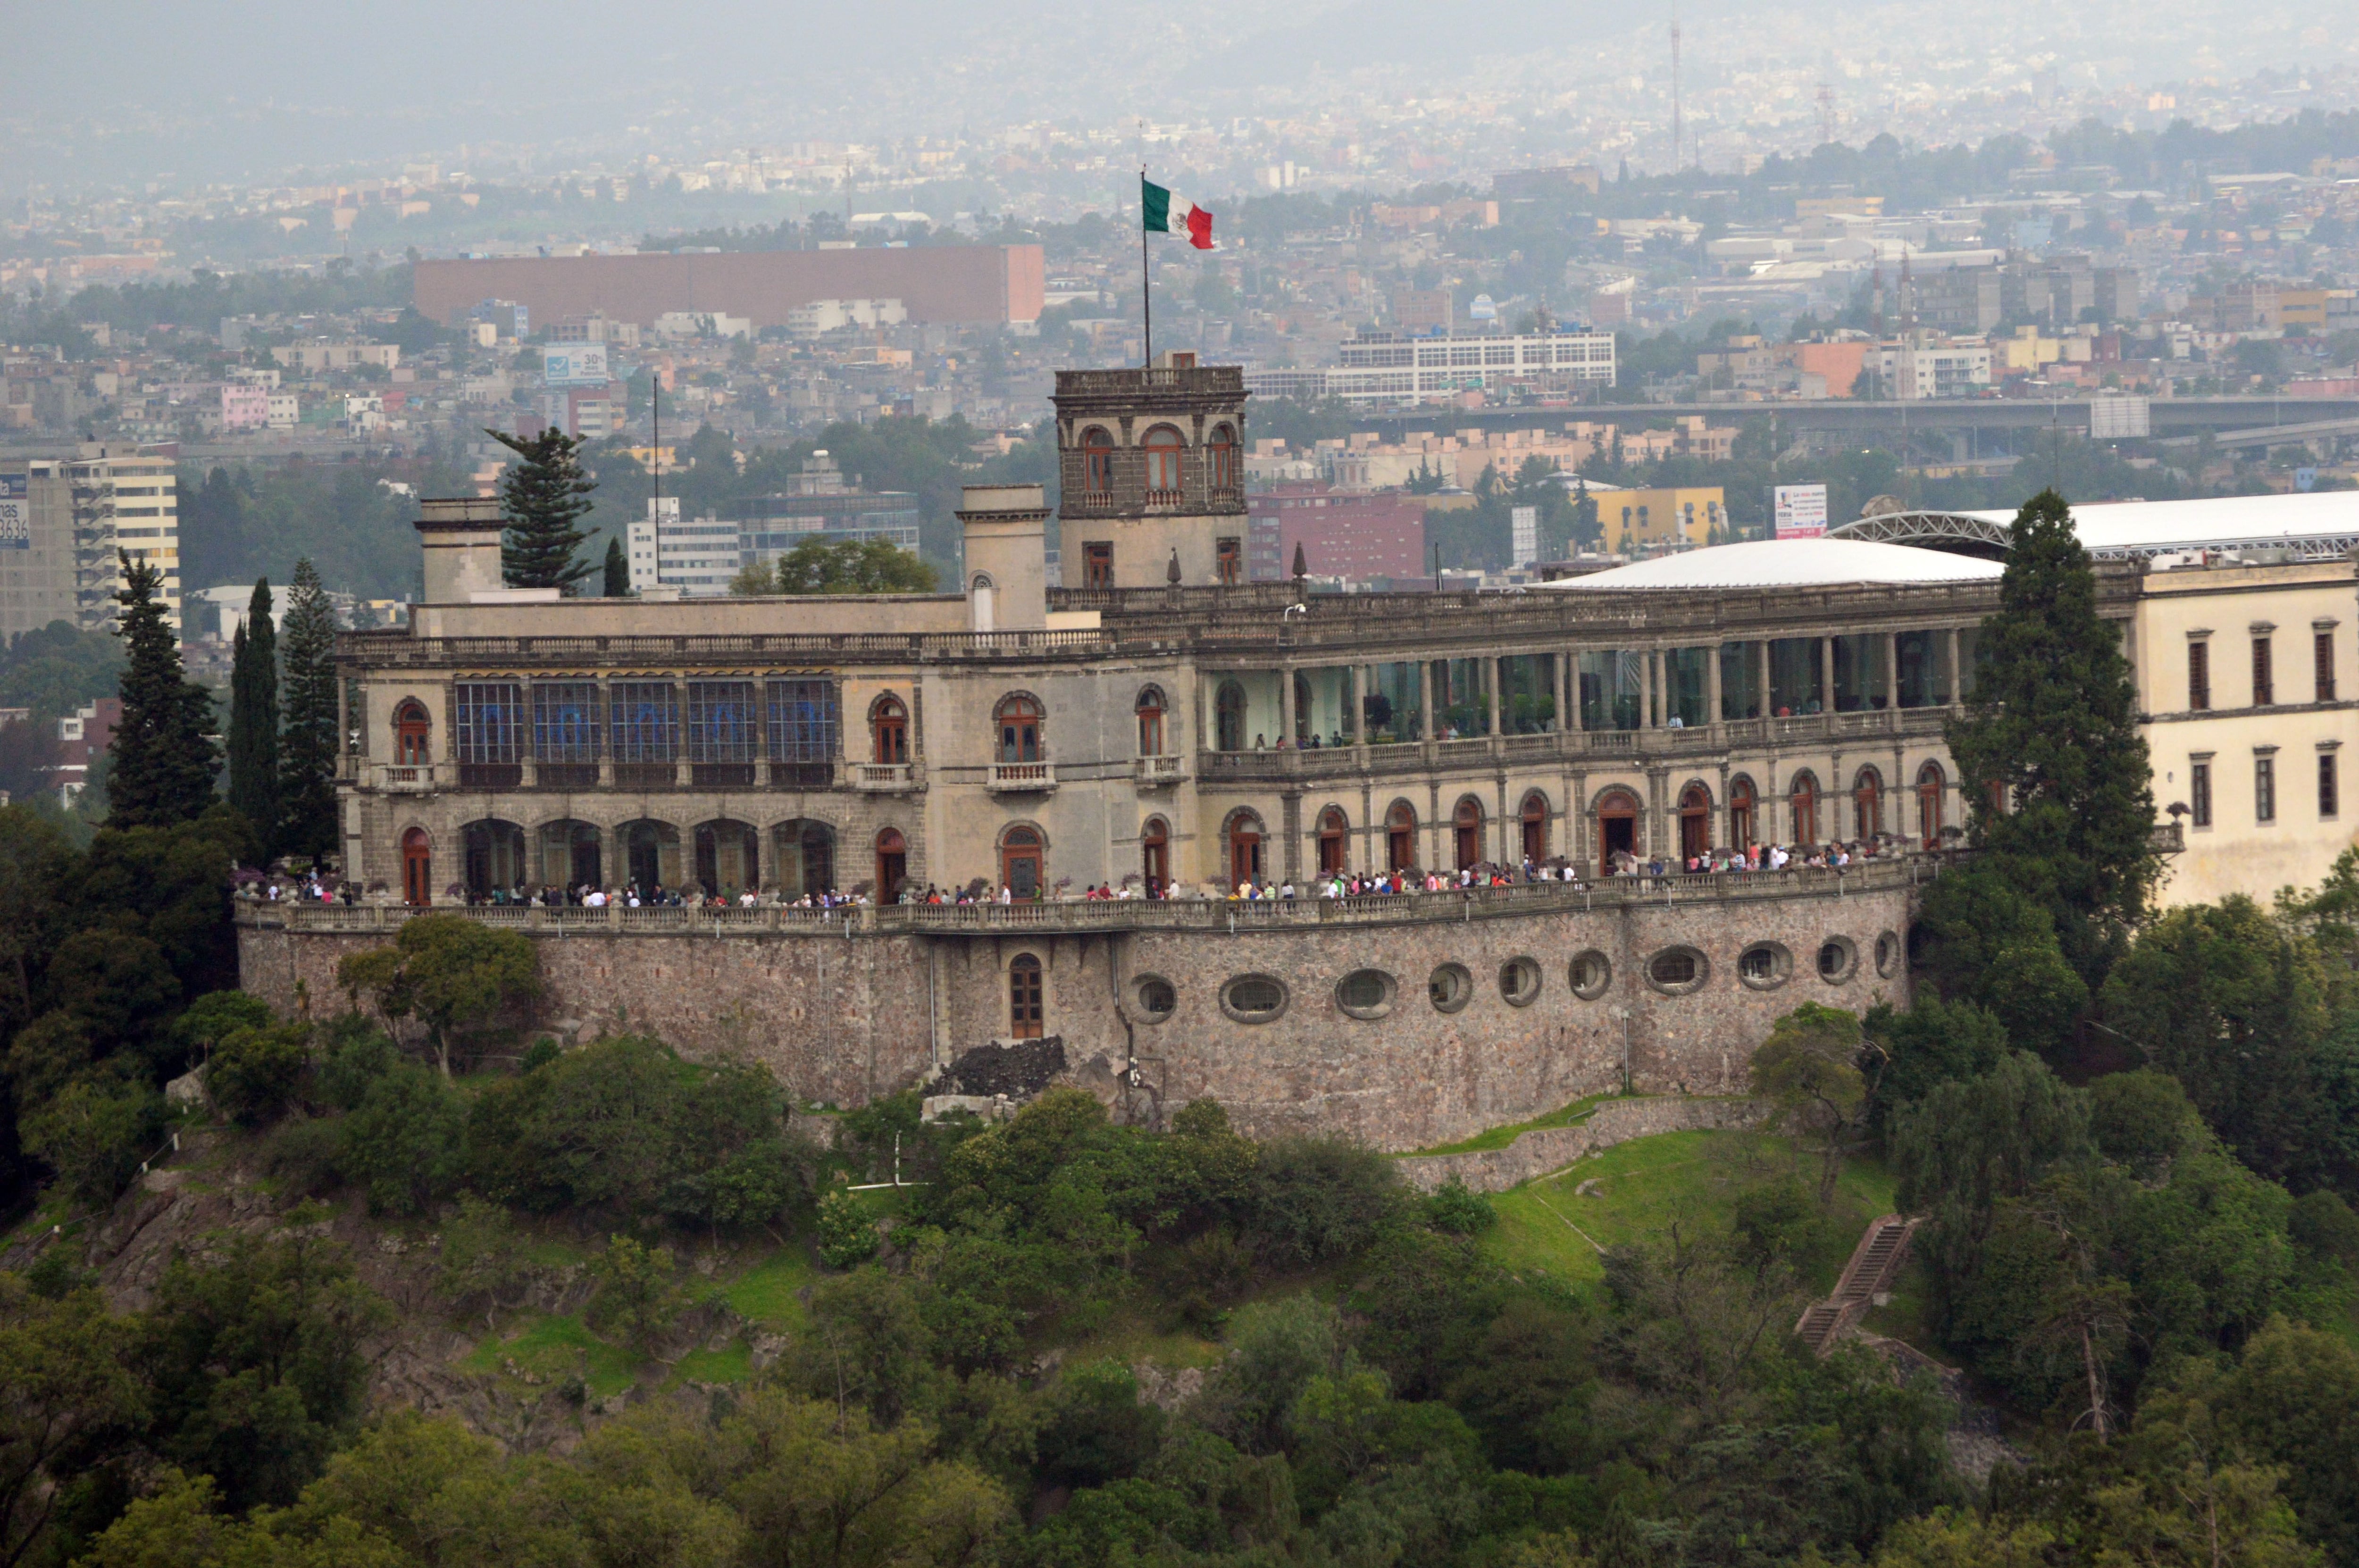 El significado de la palabra "Chapultepec" viene del náhuatl que significa "Cerro del chapulín”. (Foto: Wiki Commons)